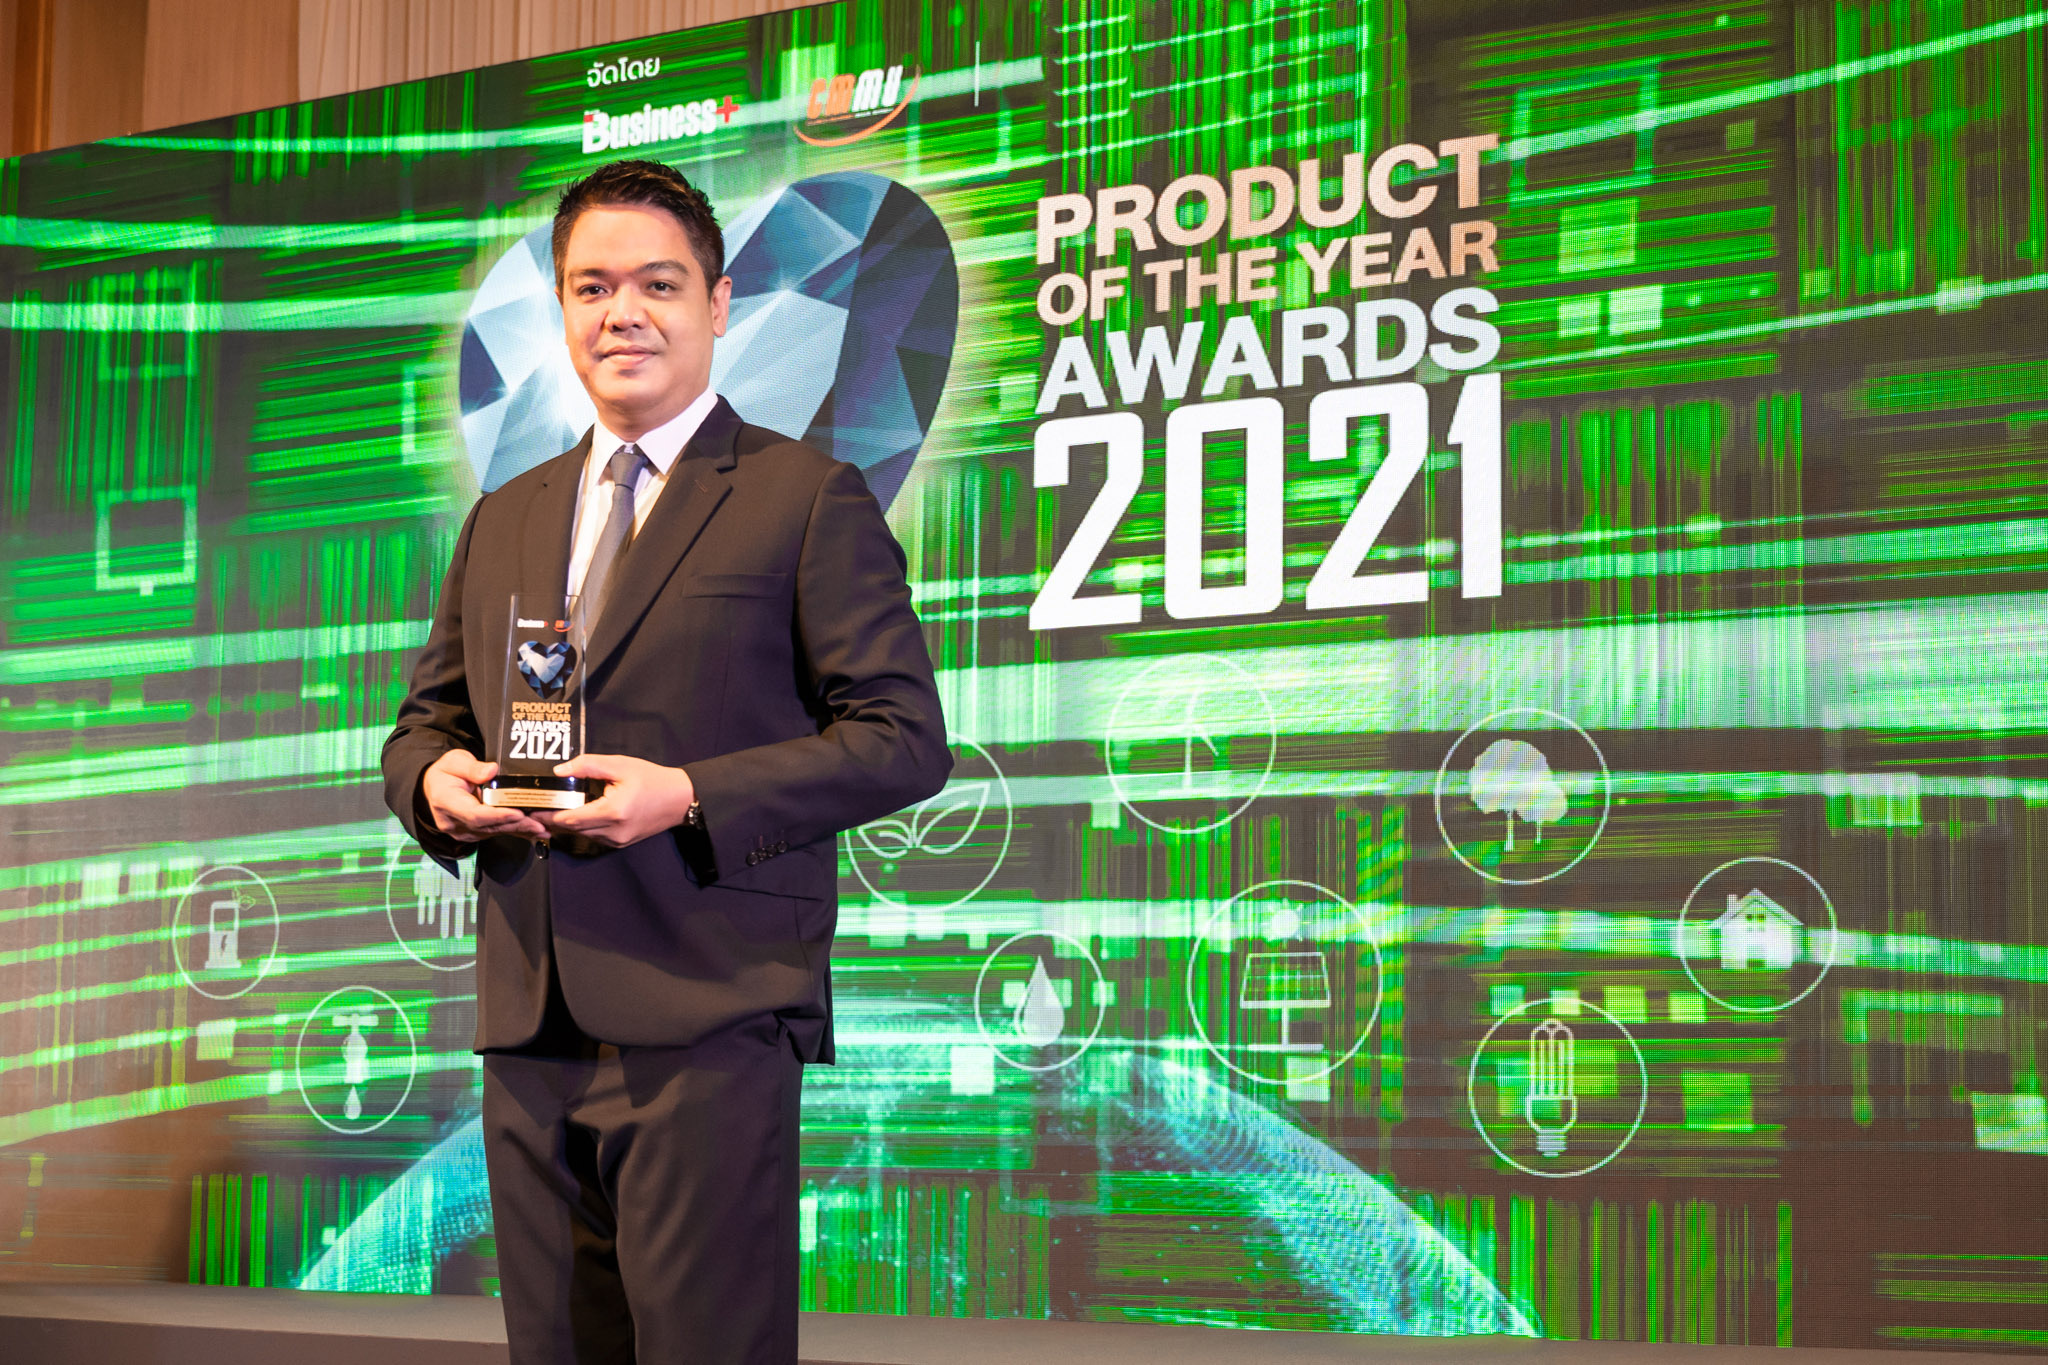 เคอรี่ เอ็กซ์เพรส” ปลื้ม ได้รับรางวัล BUSINESS PRODUCT OF THE YEAR AWARDS 2021